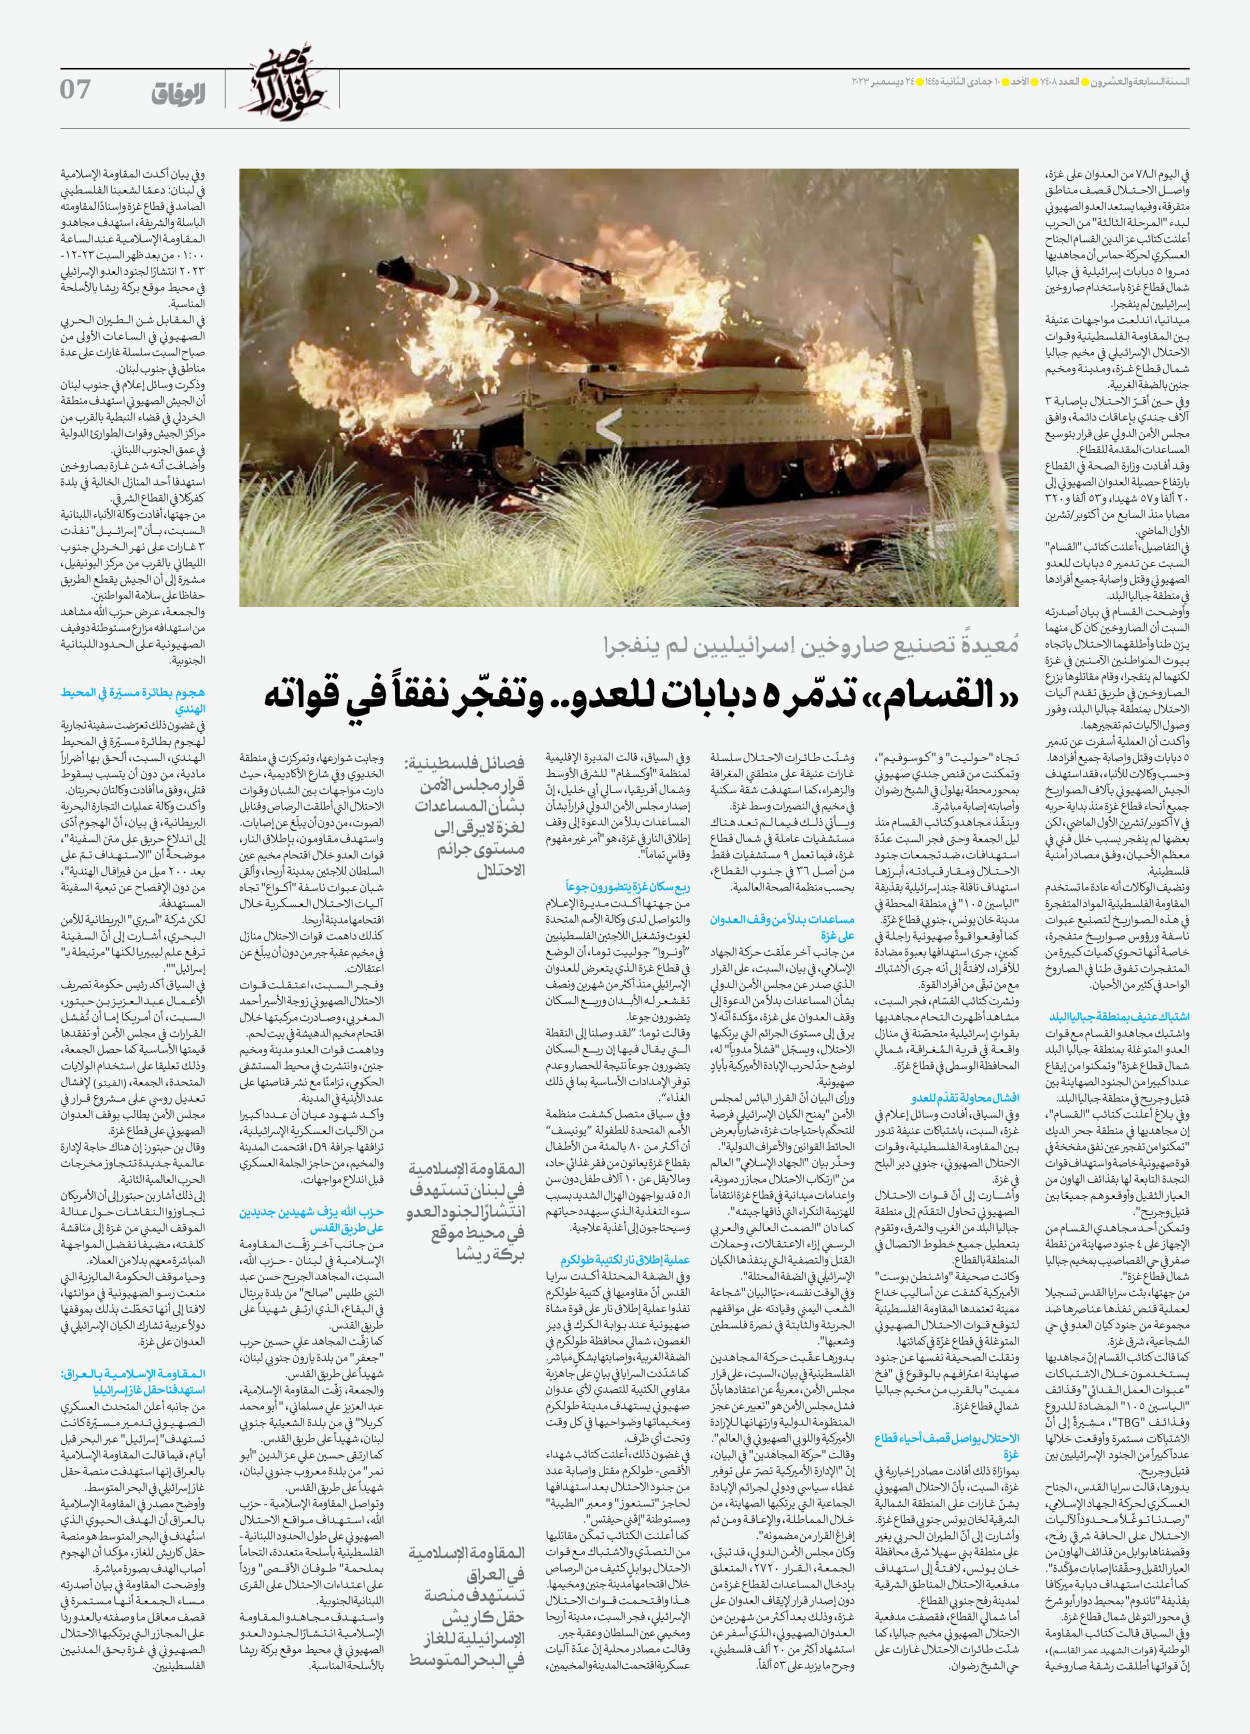 صحیفة ایران الدولیة الوفاق - العدد سبعة آلاف وأربعمائة وثمانية - ٢٤ ديسمبر ٢٠٢٣ - الصفحة ۷